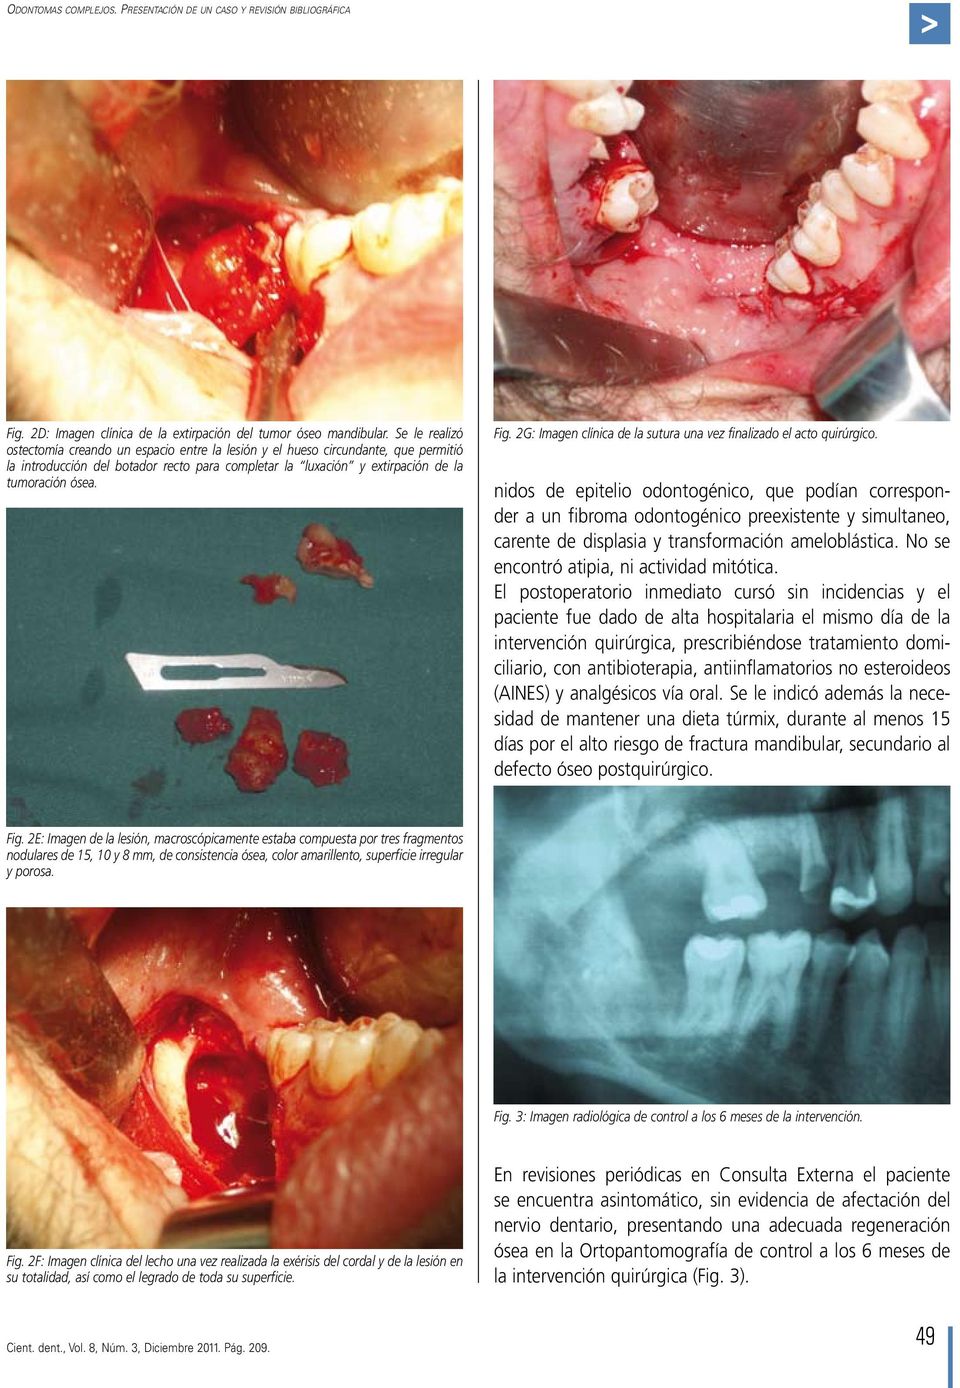 2G: Imagen clínica de la sutura una vez finalizado el acto quirúrgico.